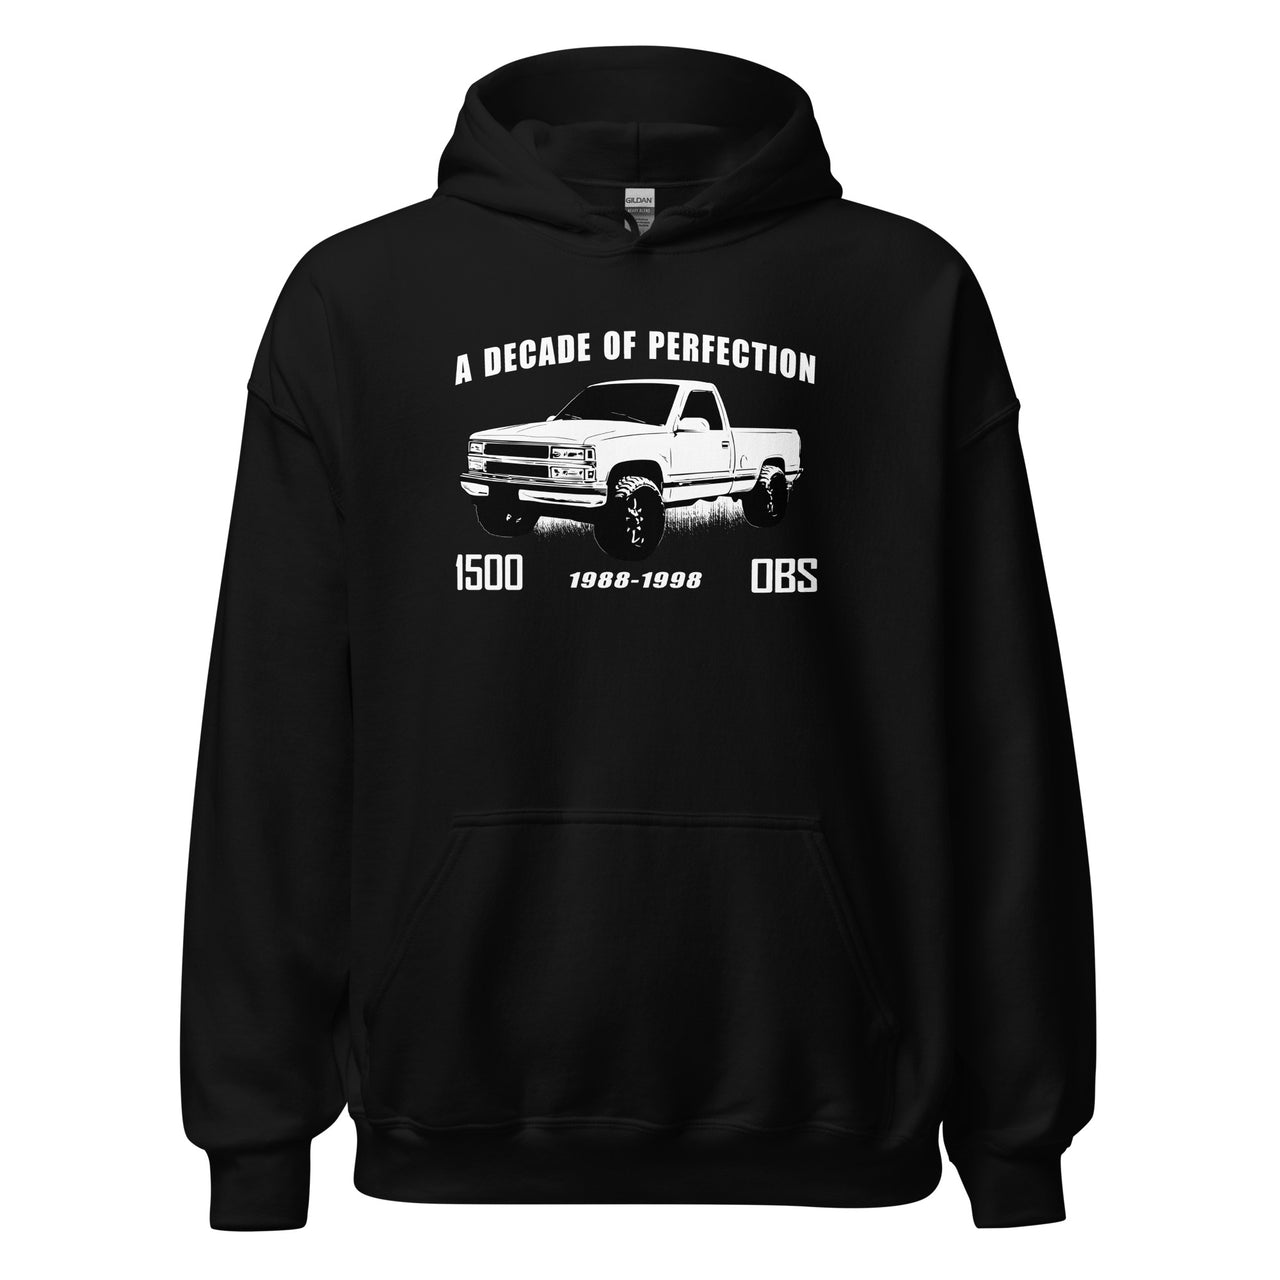 OBS 1500 Hoodie Sweatshirt in black